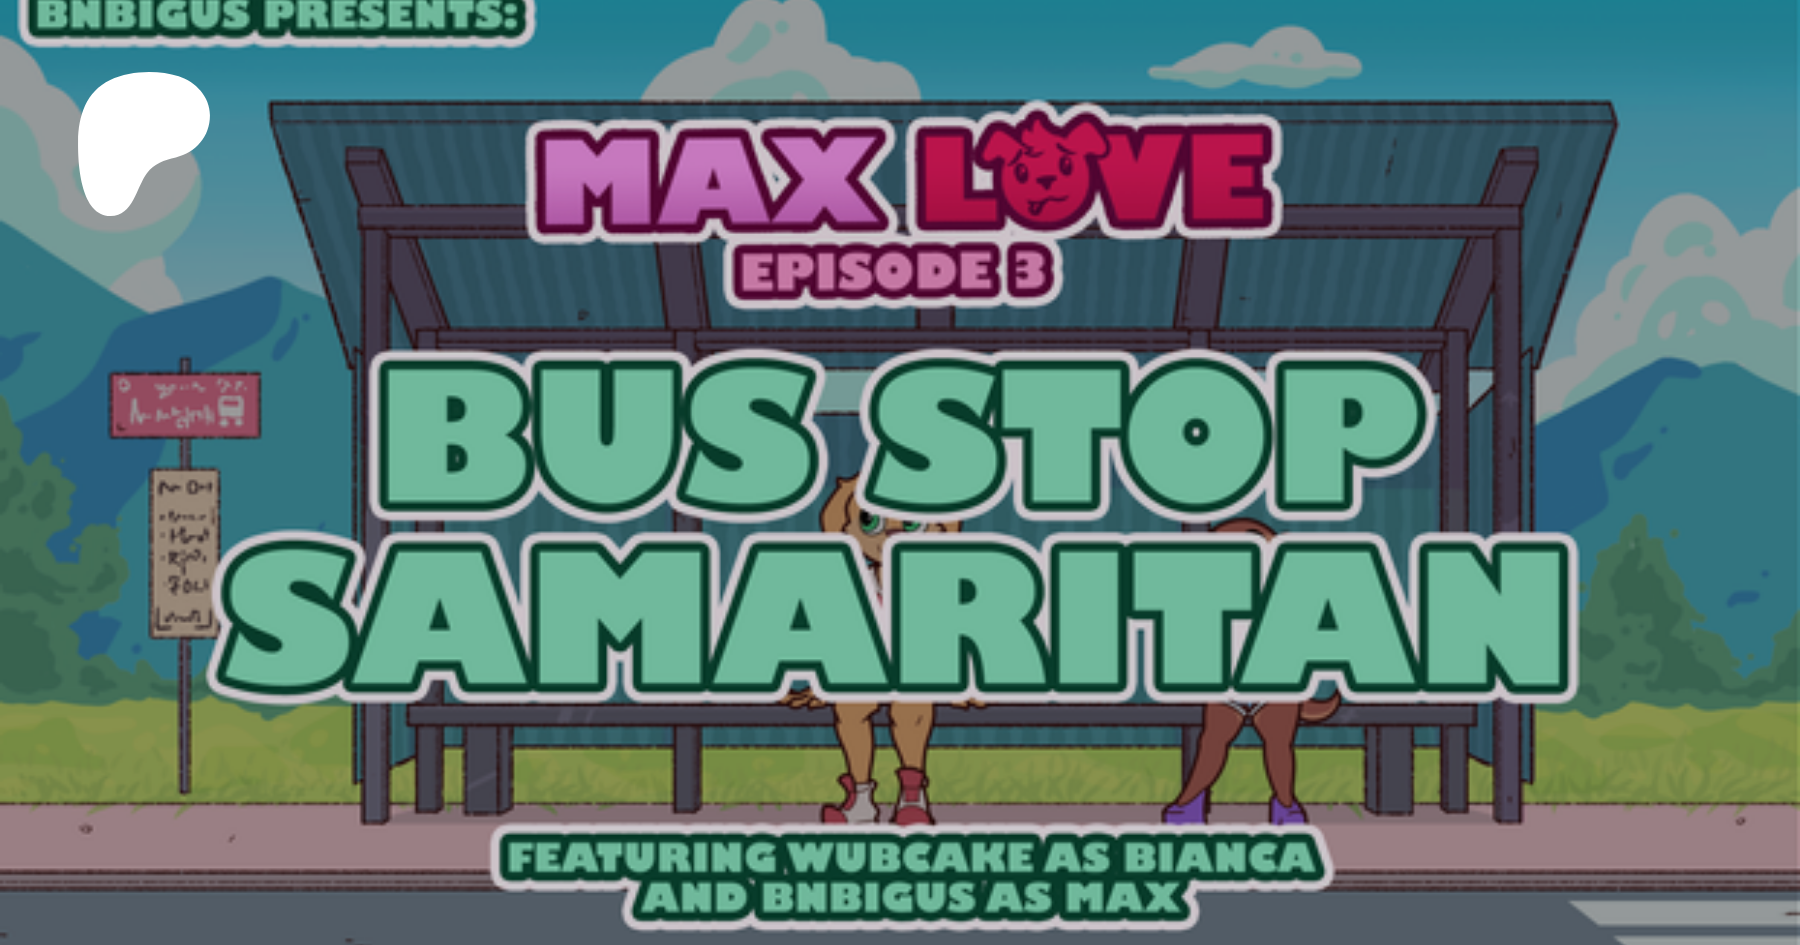 Max love bus stop samaritan